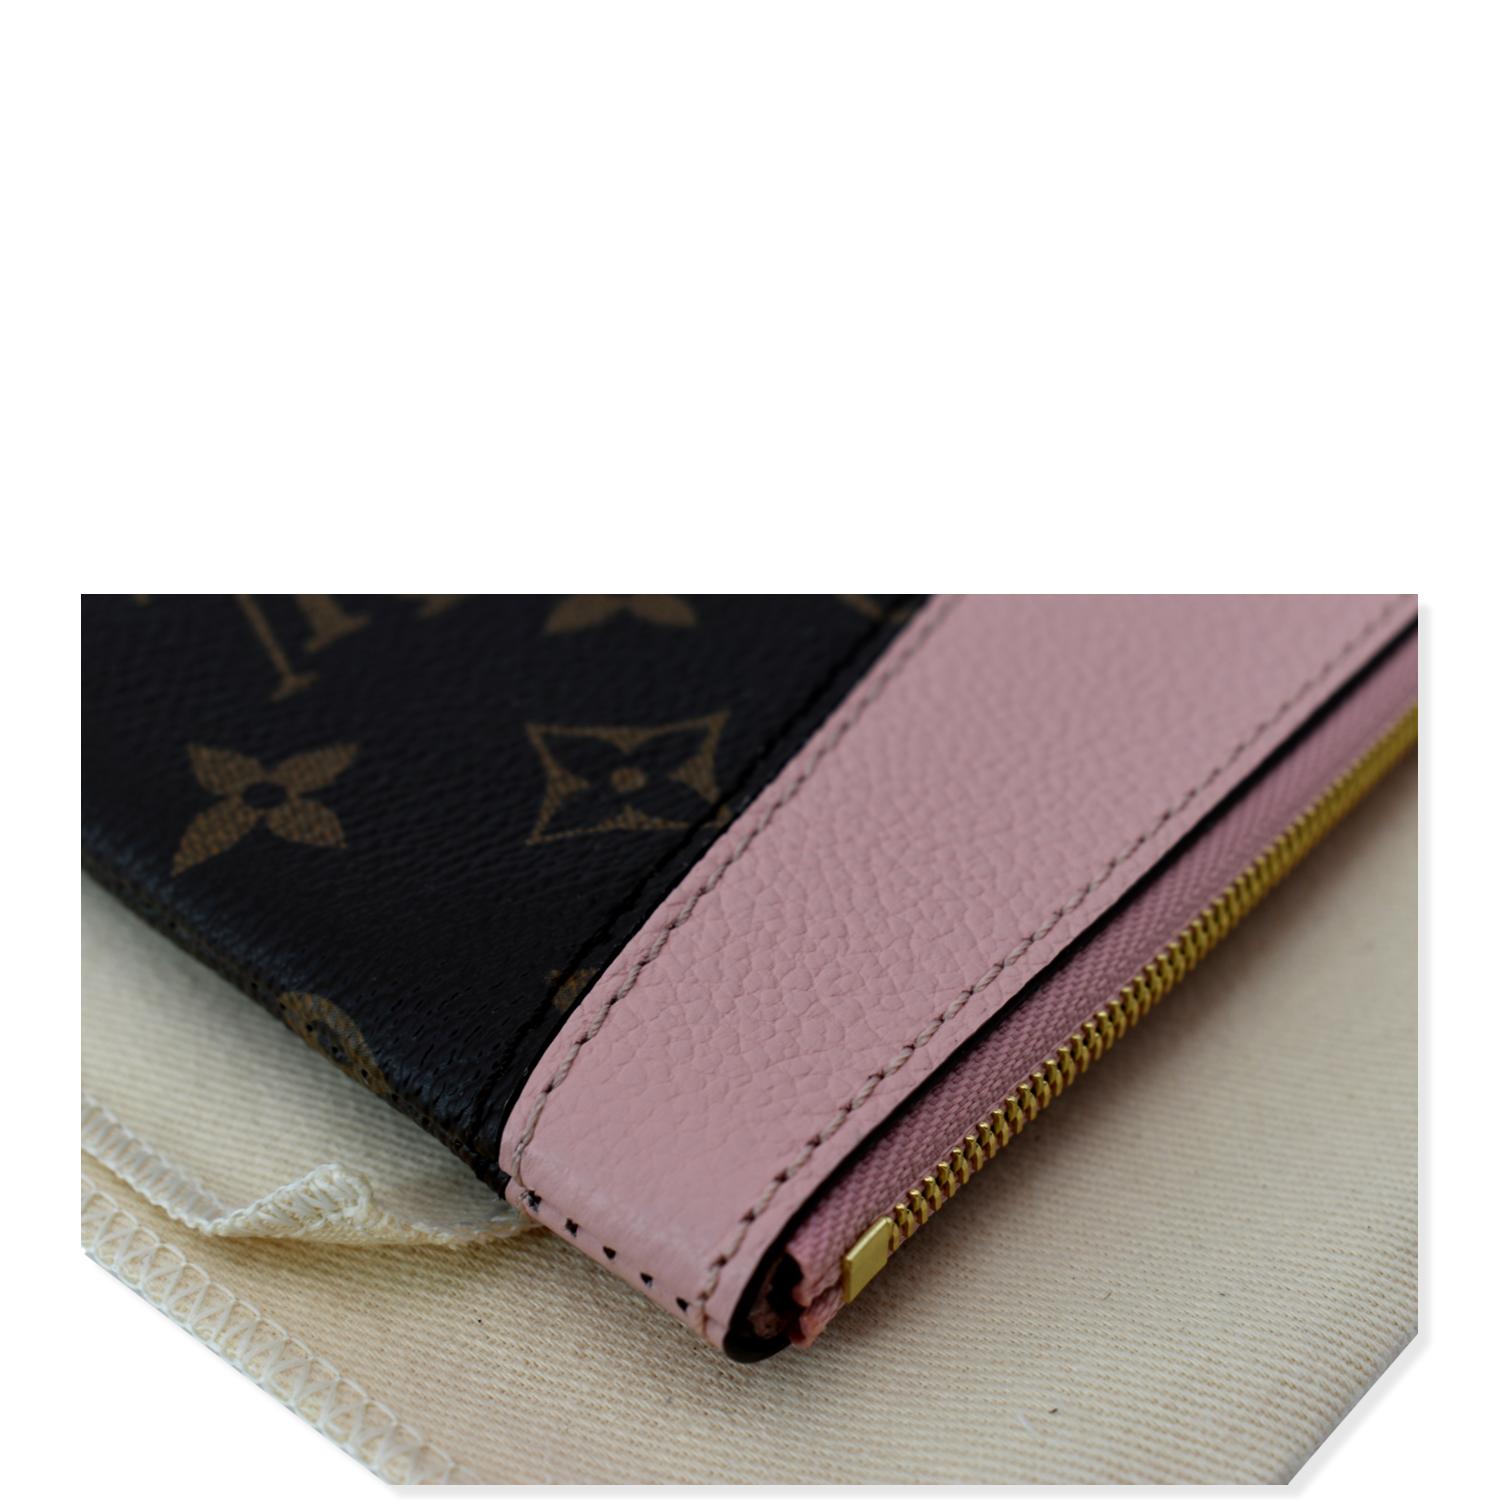 Louis Vuitton 2019 Monogram Daily clutch bag - ShopStyle